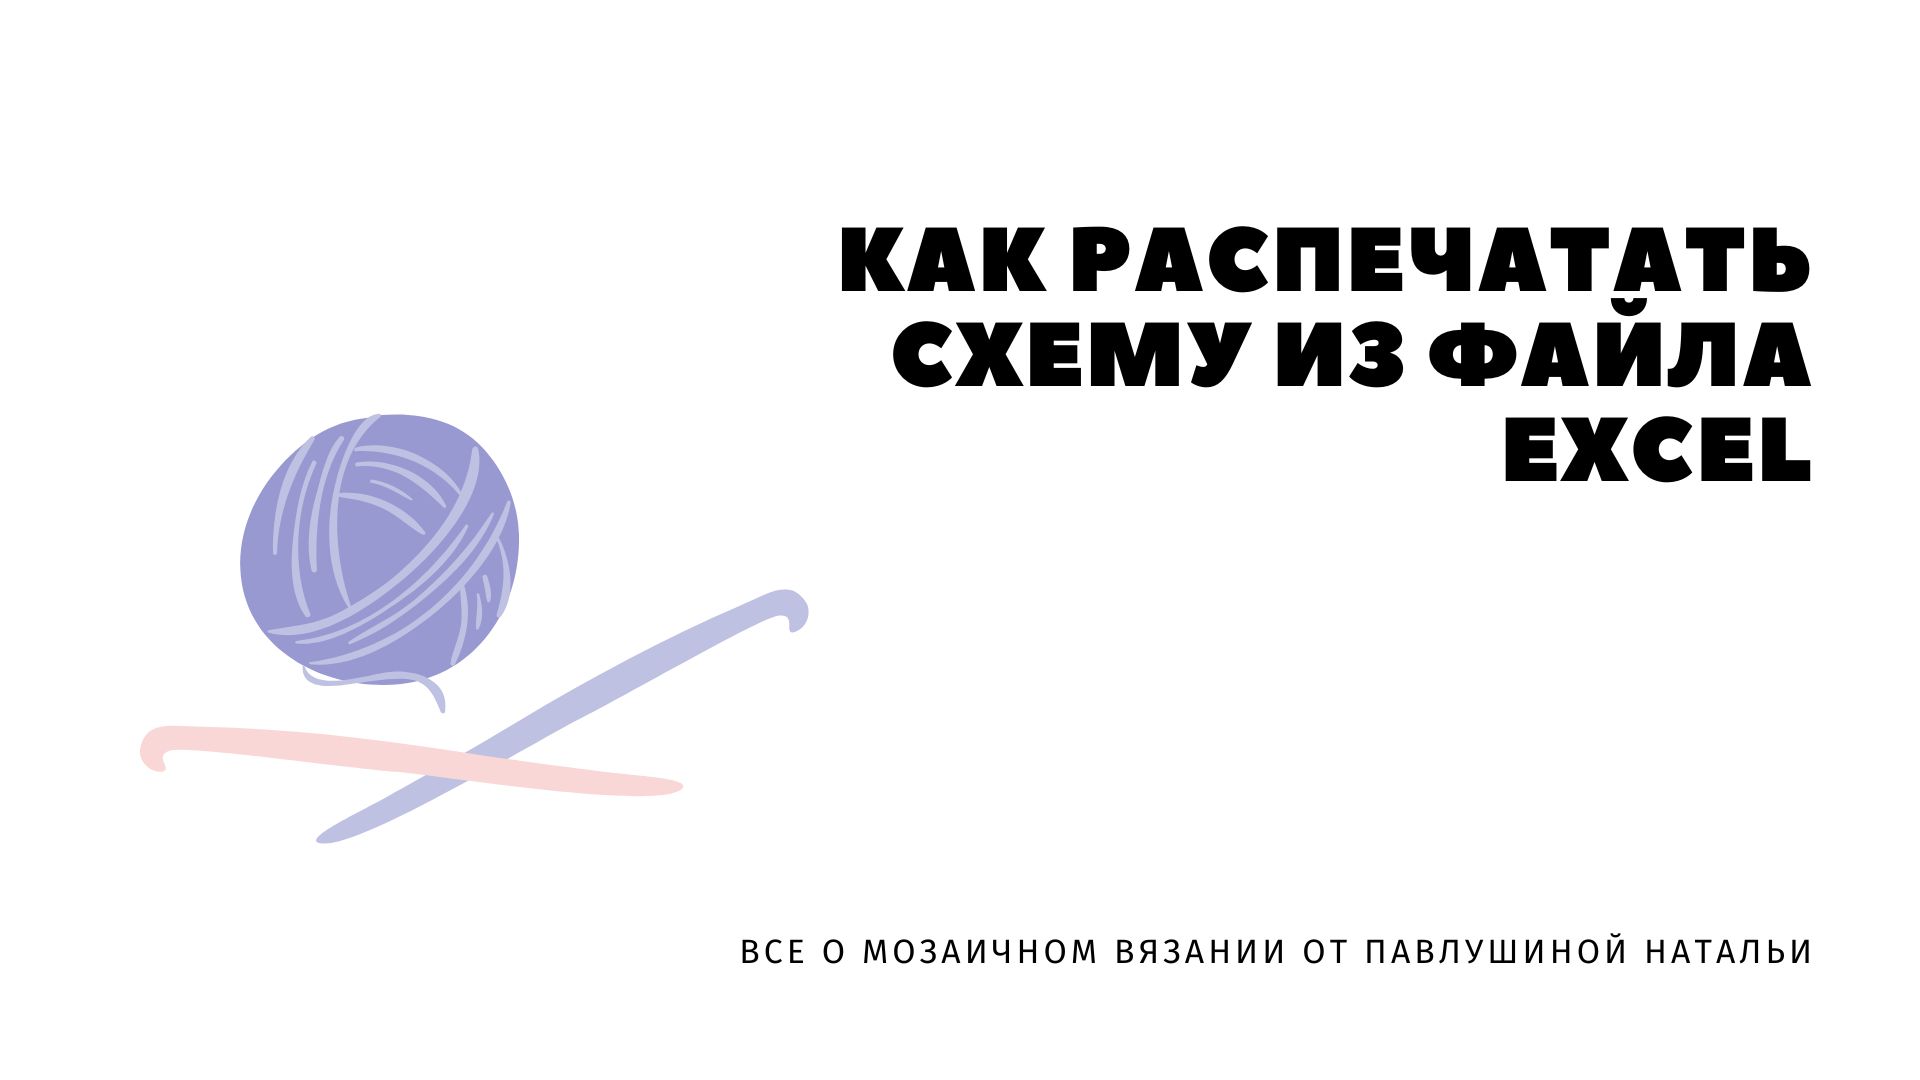 Вязание крючком: схемы, картинки изделий, видио уроки и др | ВКонтакте